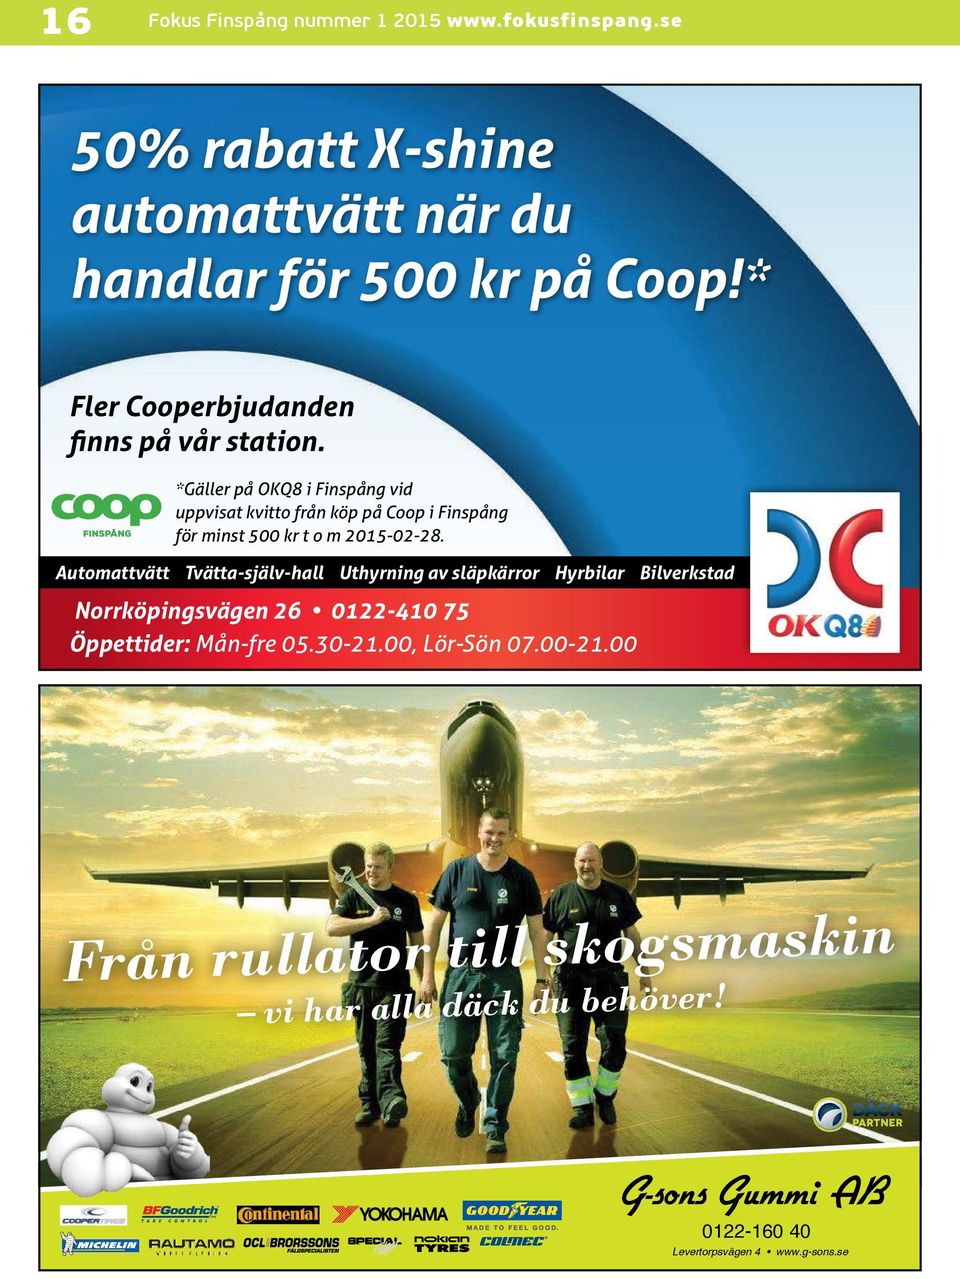 *Gäller på OKQ8 i Finspång vid uppvisat kvitto från köp på Coop i Finspång för minst 500 kr t o m 2015-02-28.